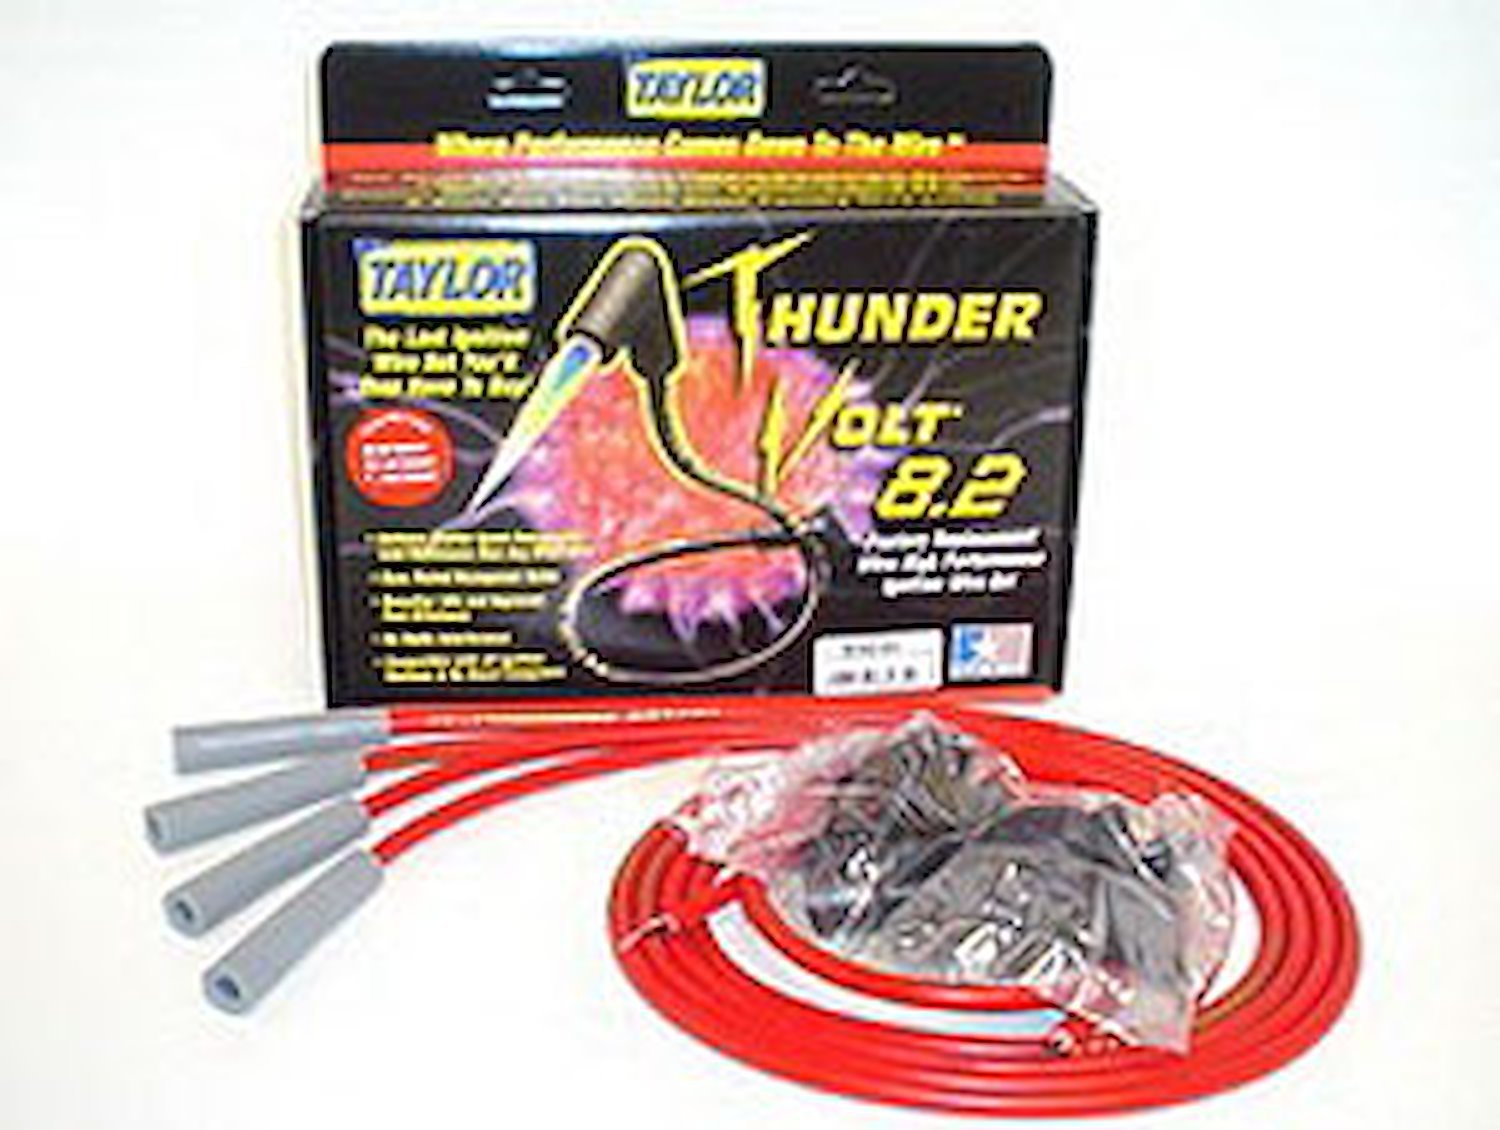 ThunderVolt 8.2mm Spark Plug Wires Universal Fit, 4-Cylinder